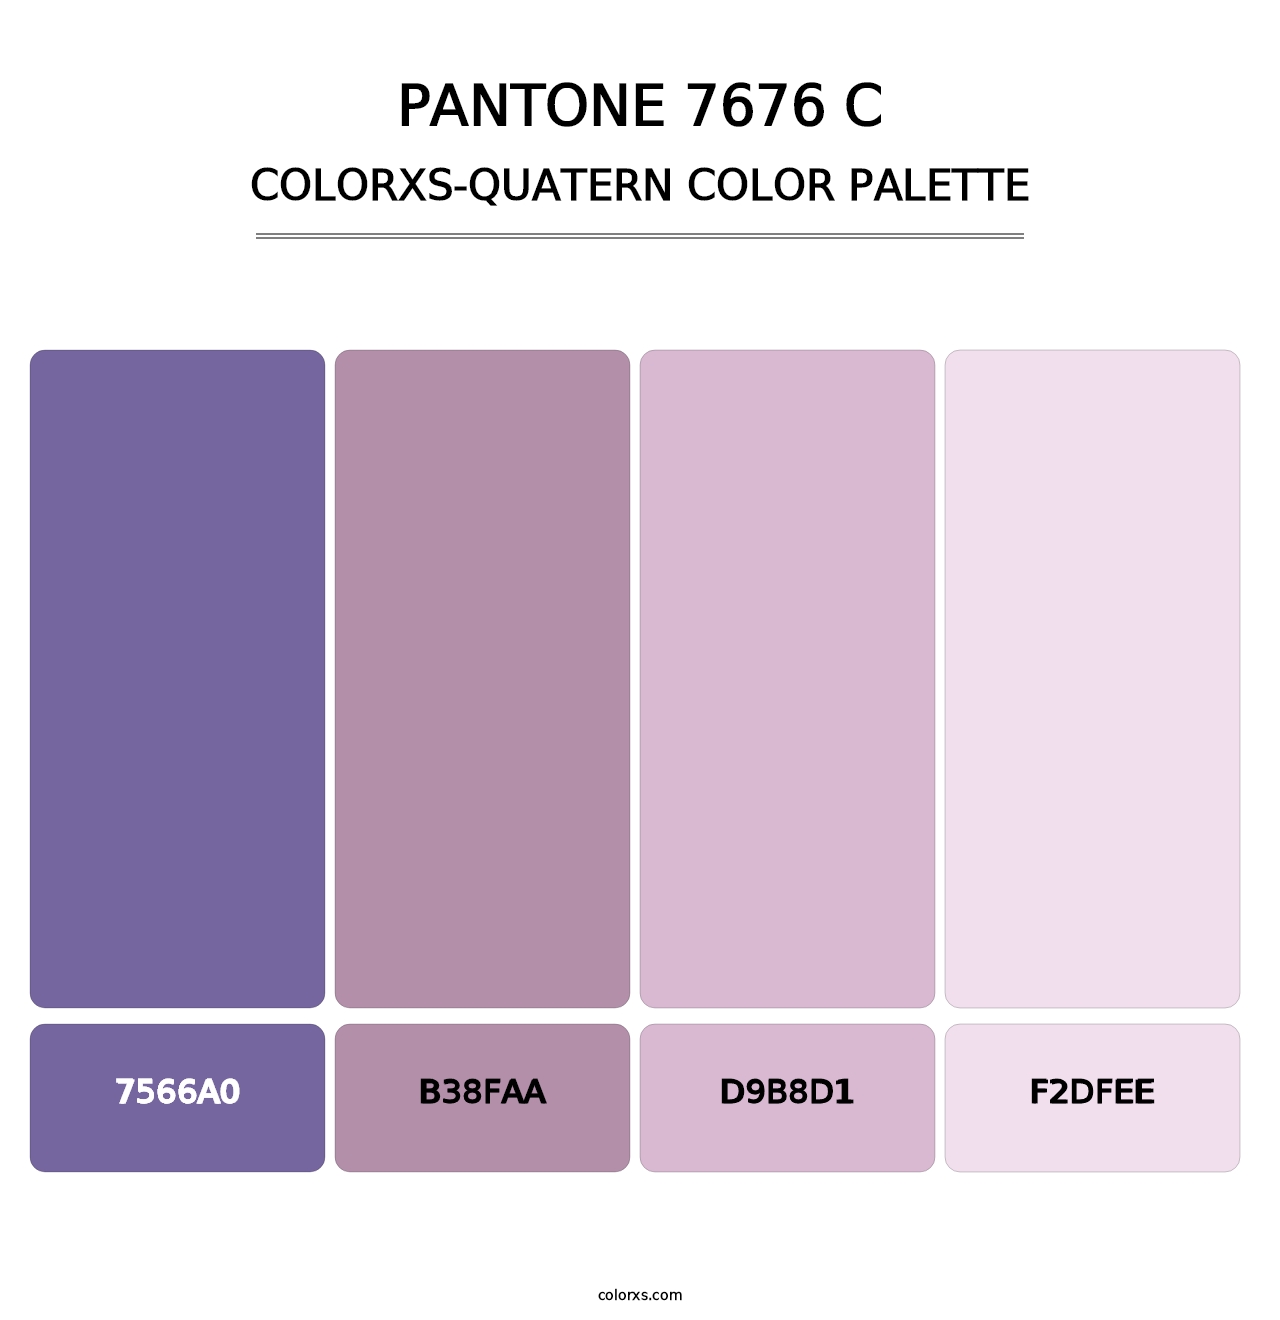 PANTONE 7676 C - Colorxs Quatern Palette